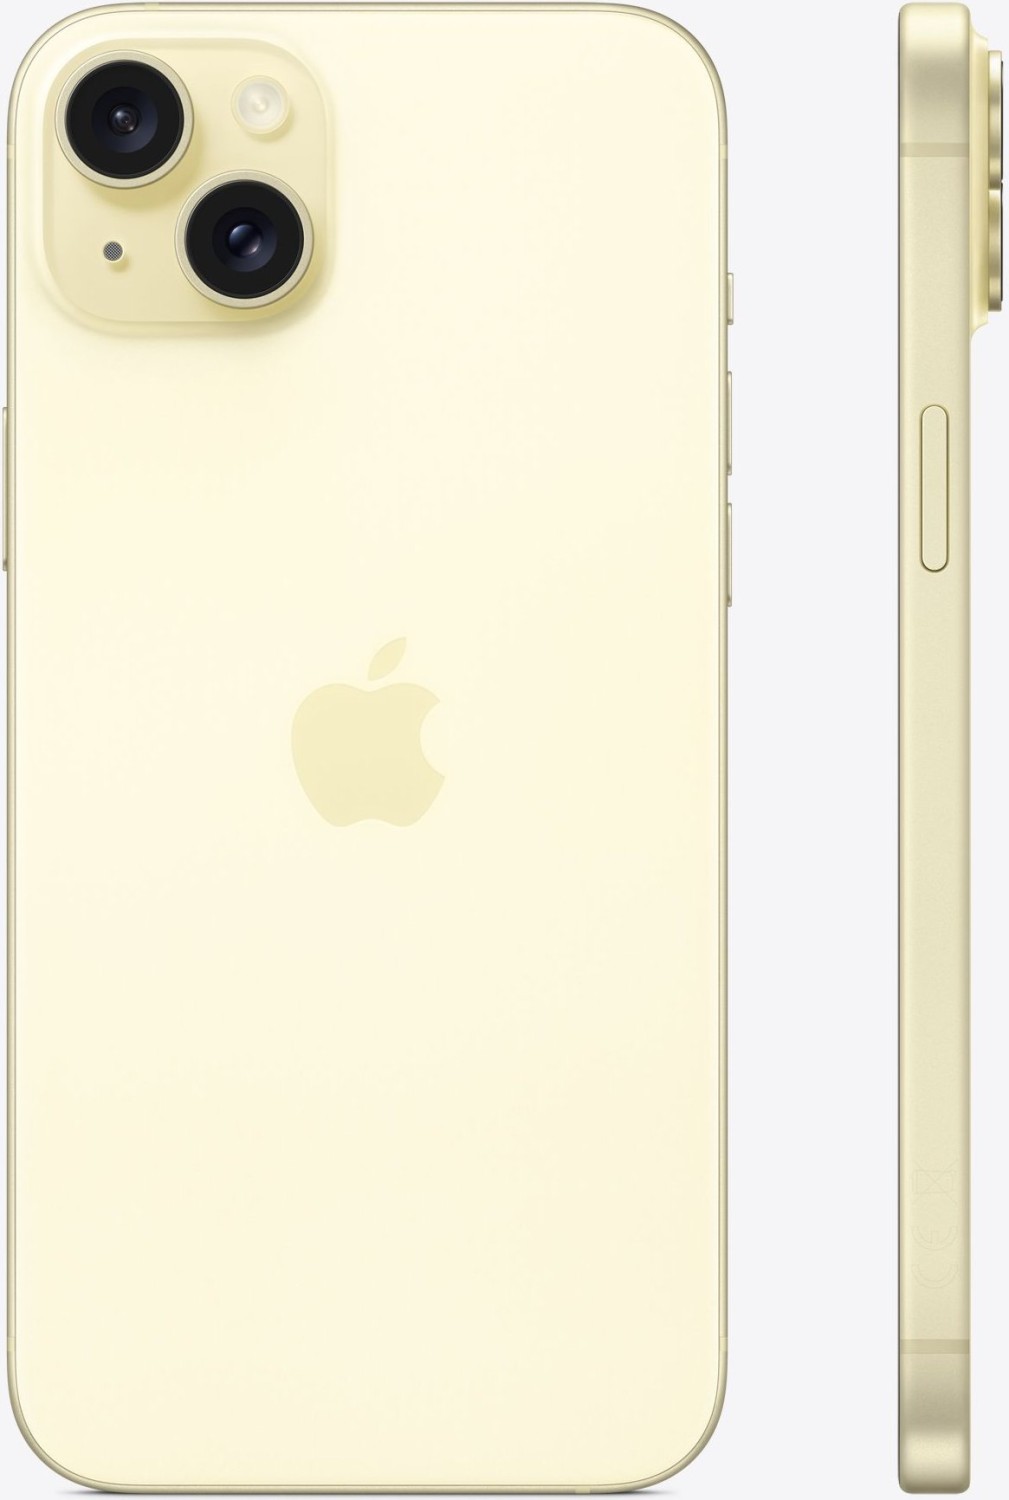 Österreich iPhone (2024) 994,29 128GB Geizhals ab Plus Preisvergleich 15 gelb | Apple €